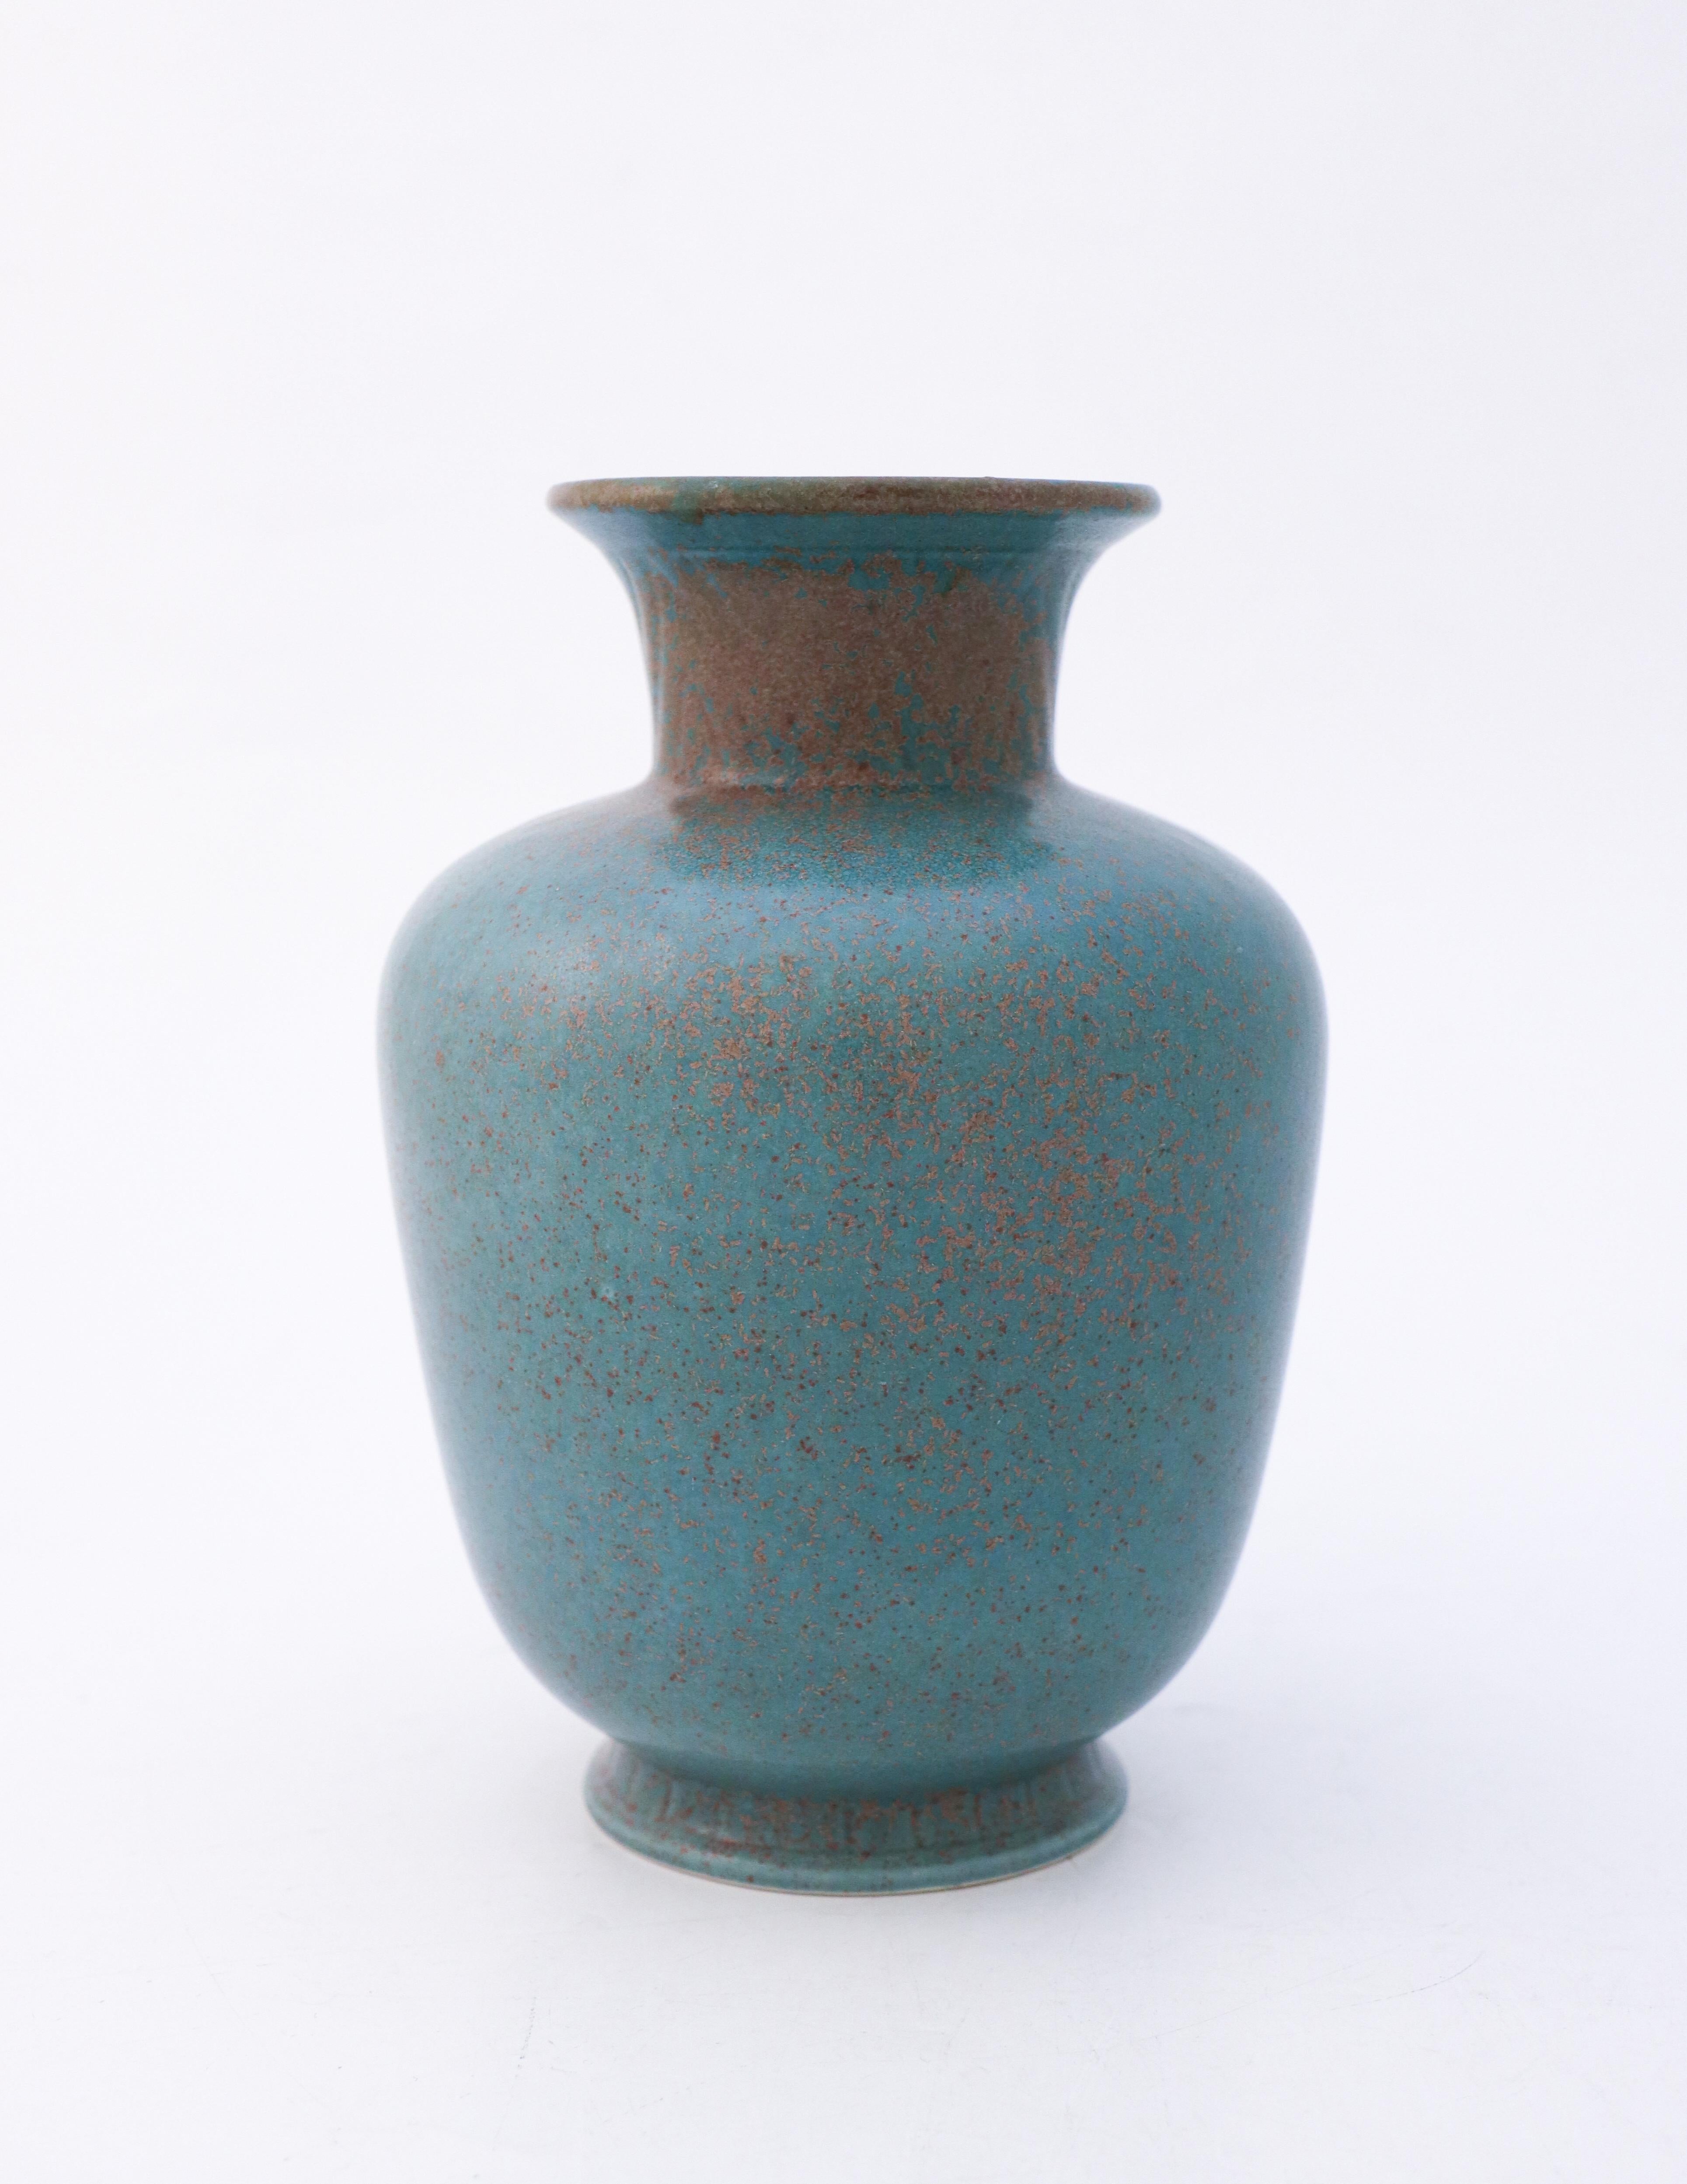 Un vase avec une étonnante glaçure mouchetée vert/turquoise foncé. Il s'agit de l'une des glaçures les plus populaires sur les céramiques de Gunnar Nylunds. Le vase a été conçu par Gunnar Nylund à Rörstrand au milieu du XXe siècle. Le vase mesure 19